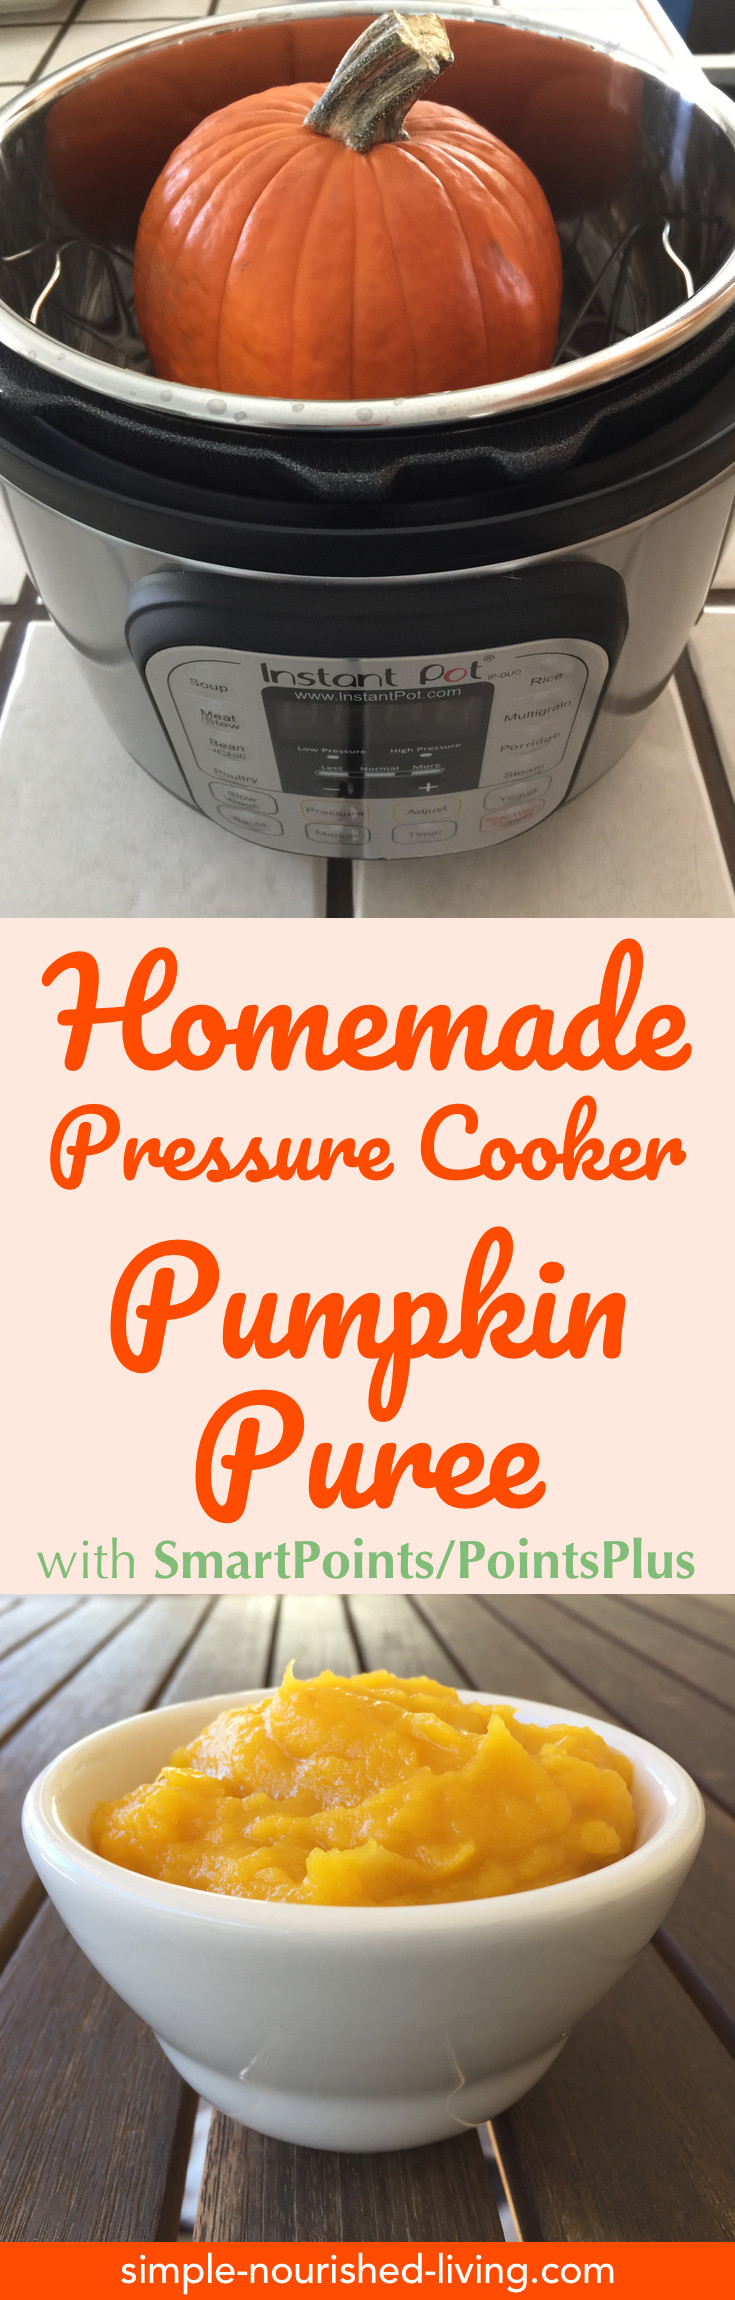 Low Calorie Pressure Cooker Recipes
 Pressure Cooker Pumpkin Puree Recipe